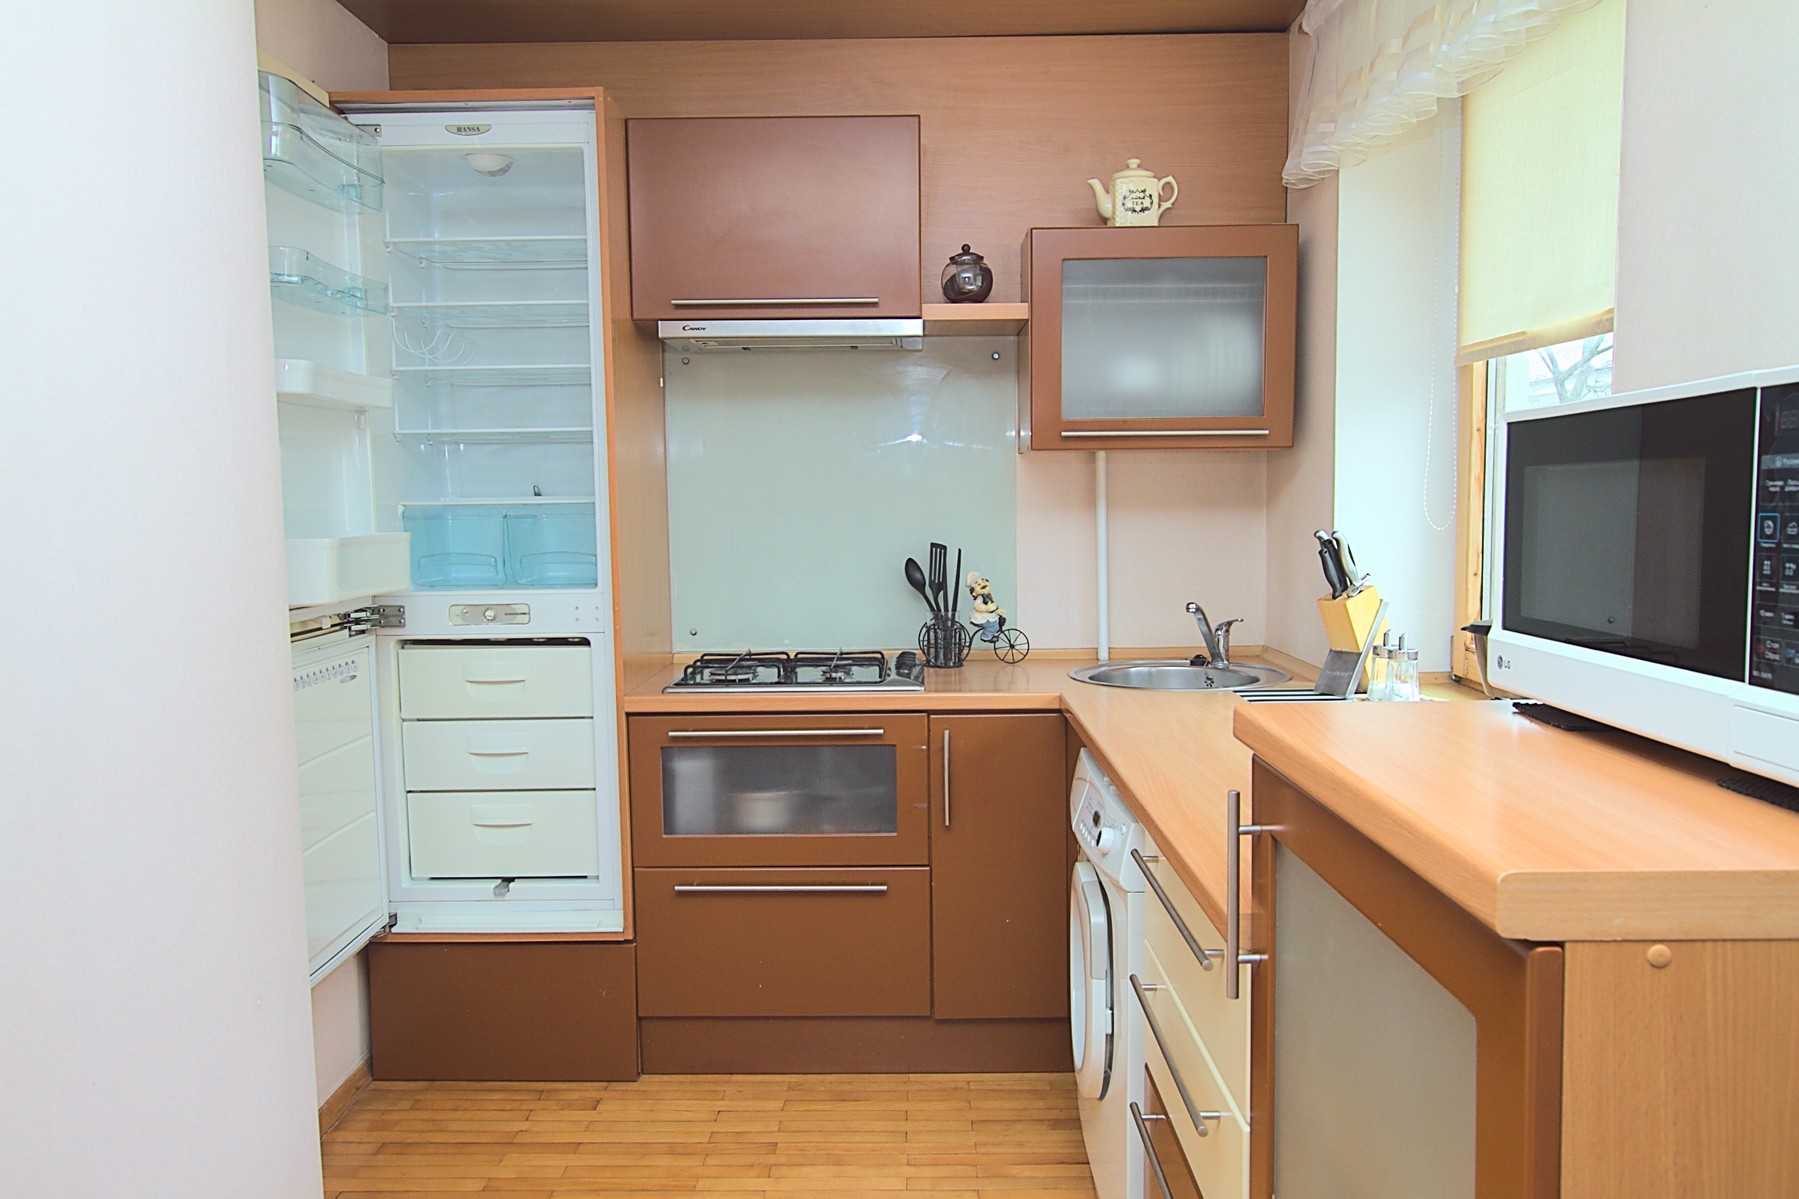 Favorita Apartment est un appartement de 2 pièces à louer à Chisinau, Moldova